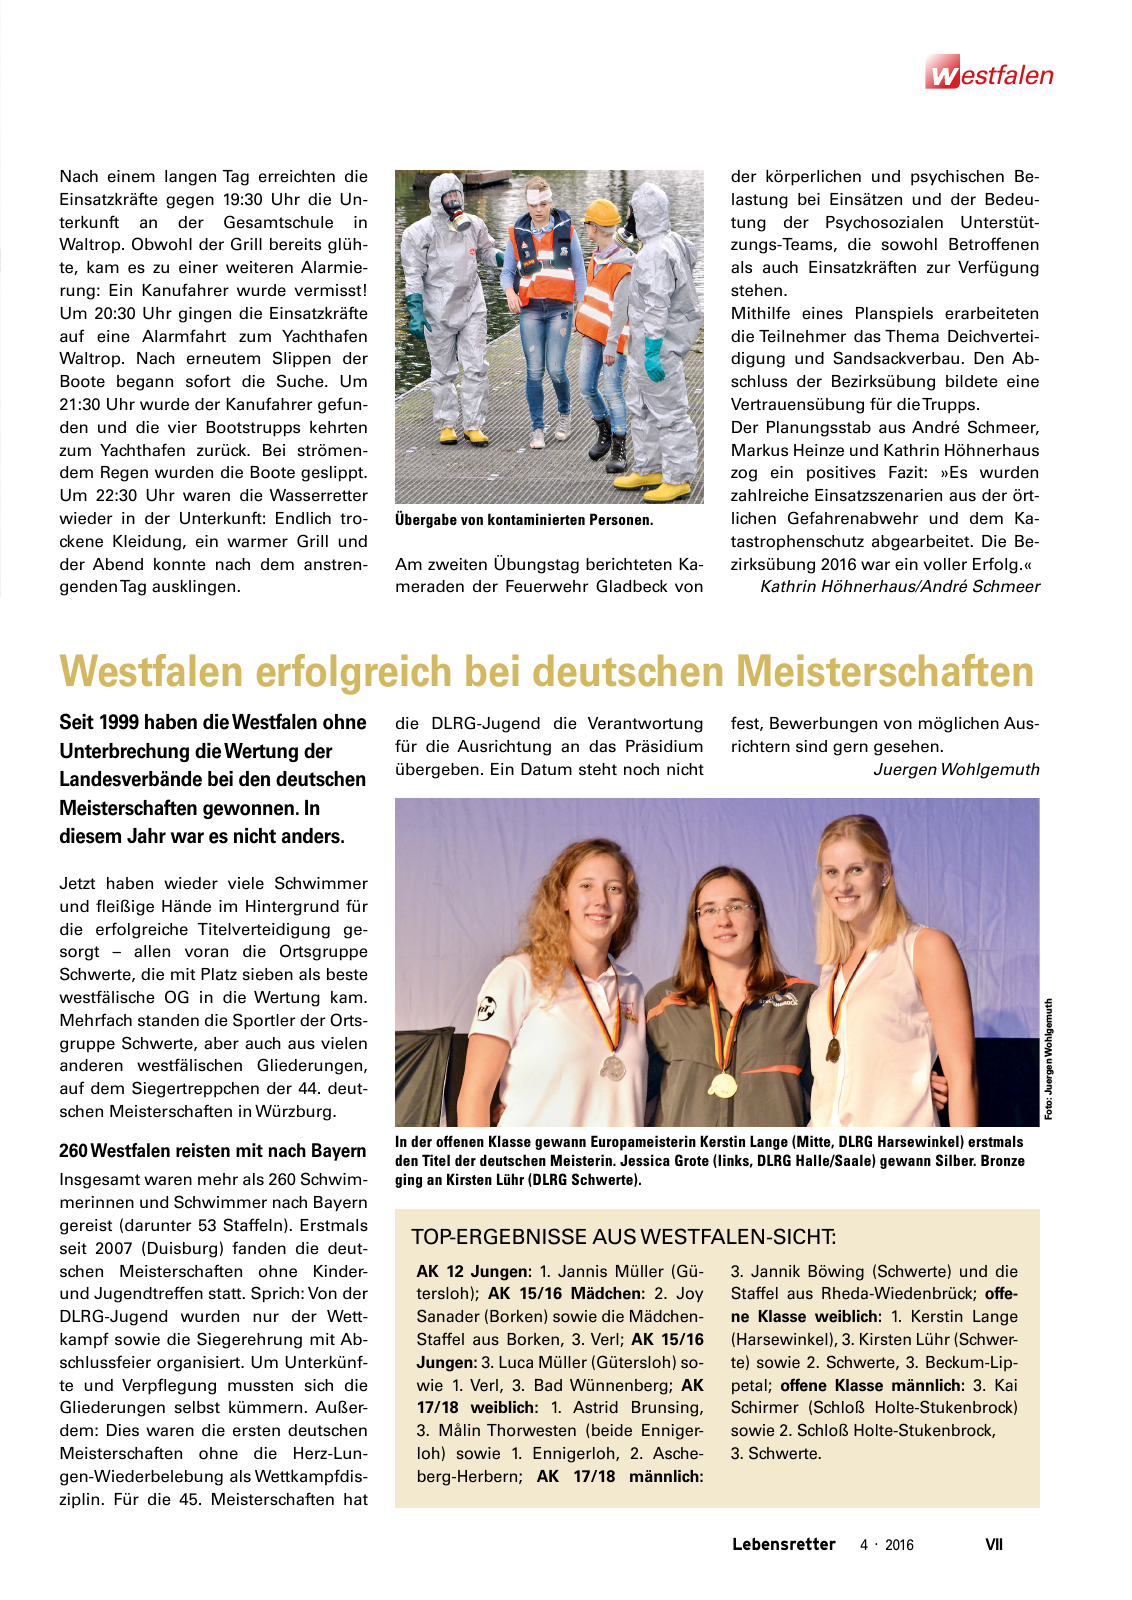 Vorschau Lebensretter 4/2016 - Regionalausgabe Westfalen Seite 9